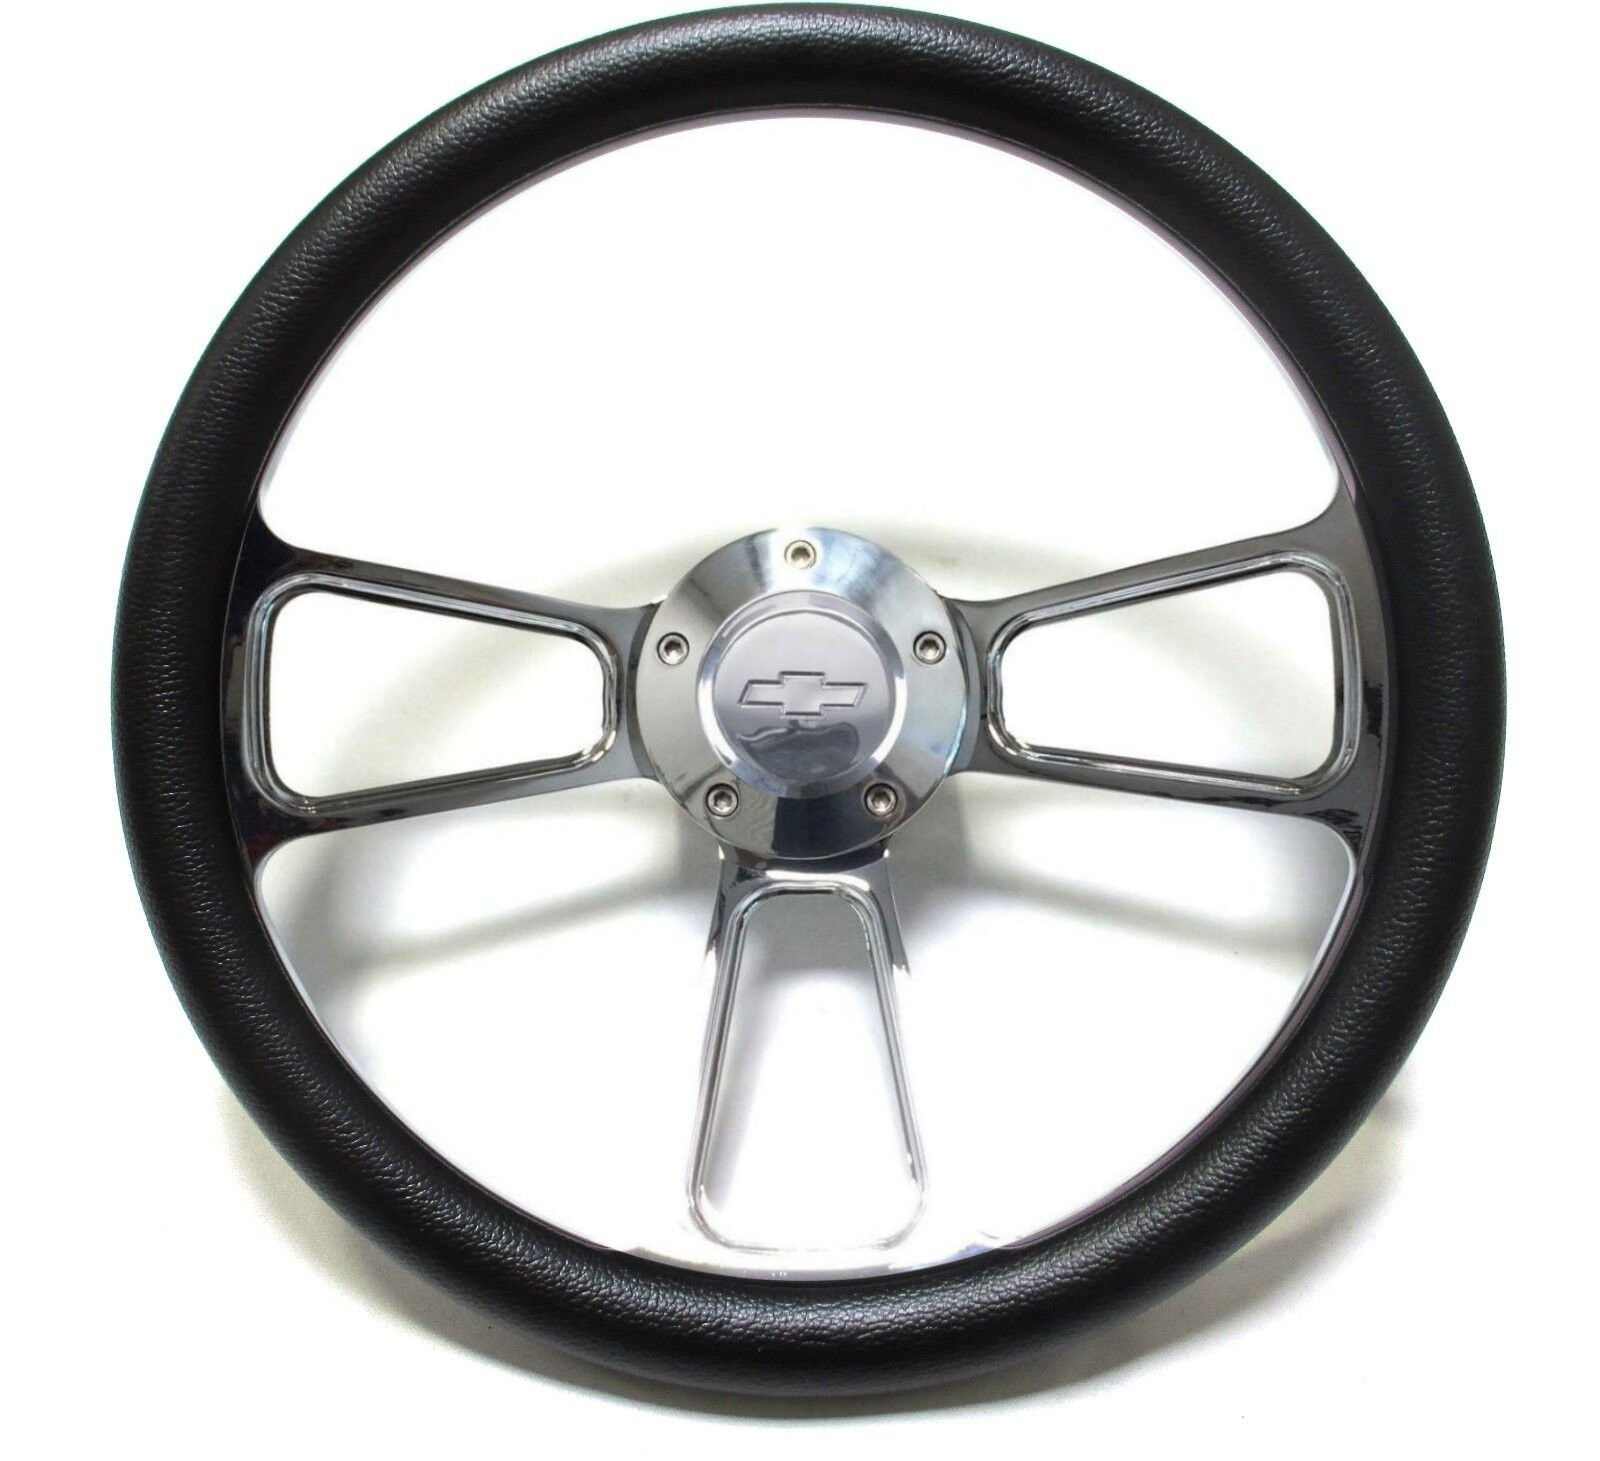 1975 -1980 Chevrolet Monte Carlo Billet/ Black Steering Wheel & Adapter Kit